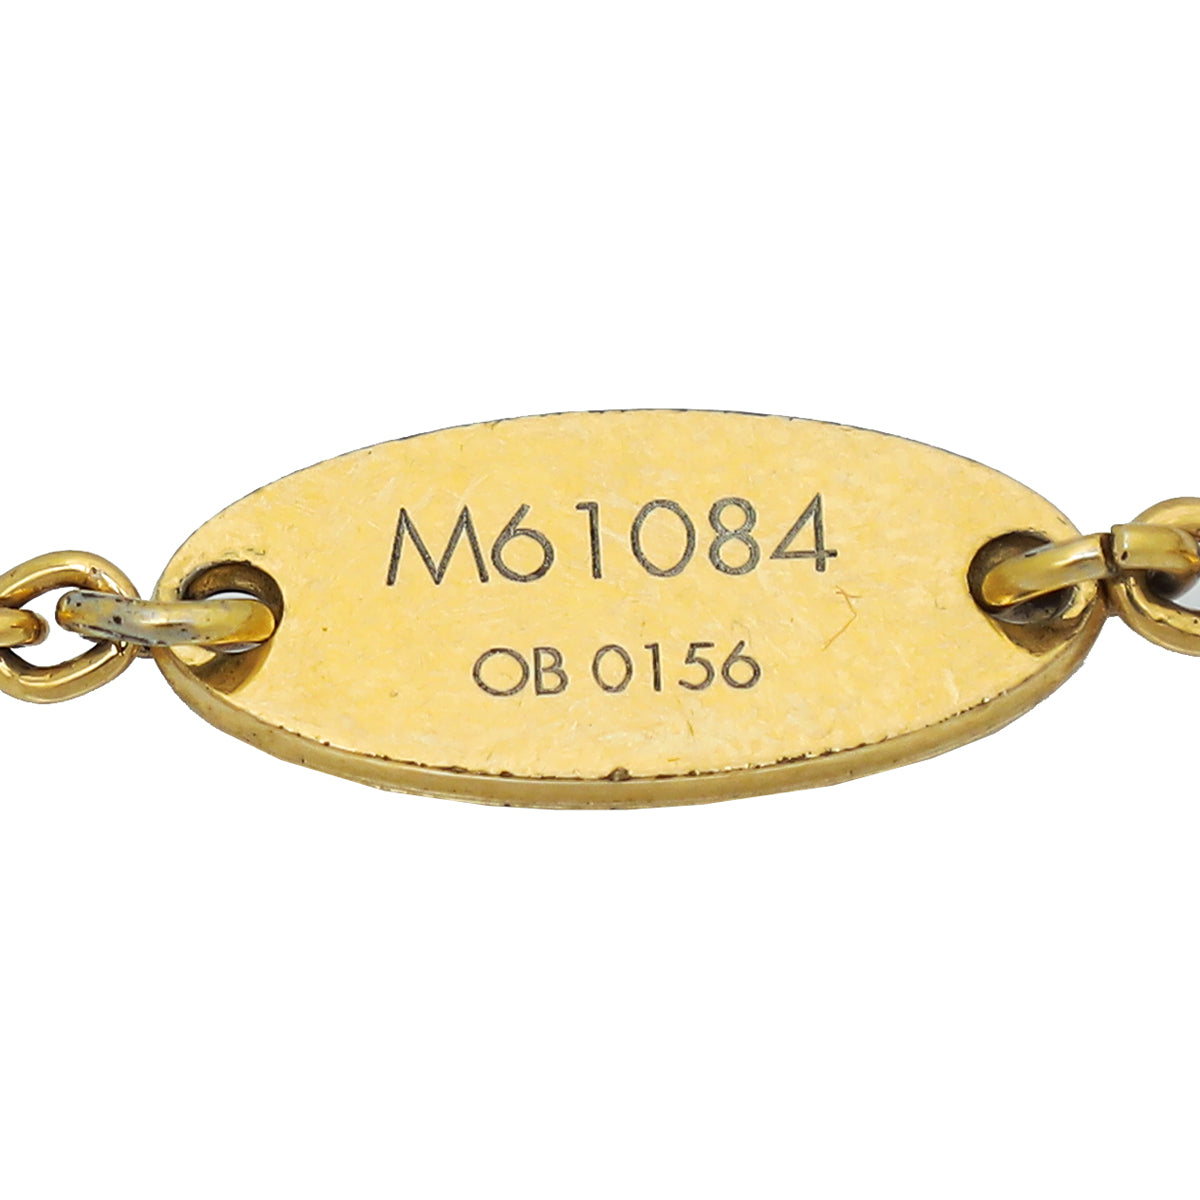 LOUIS VUITTON Essential V bracelet M61084